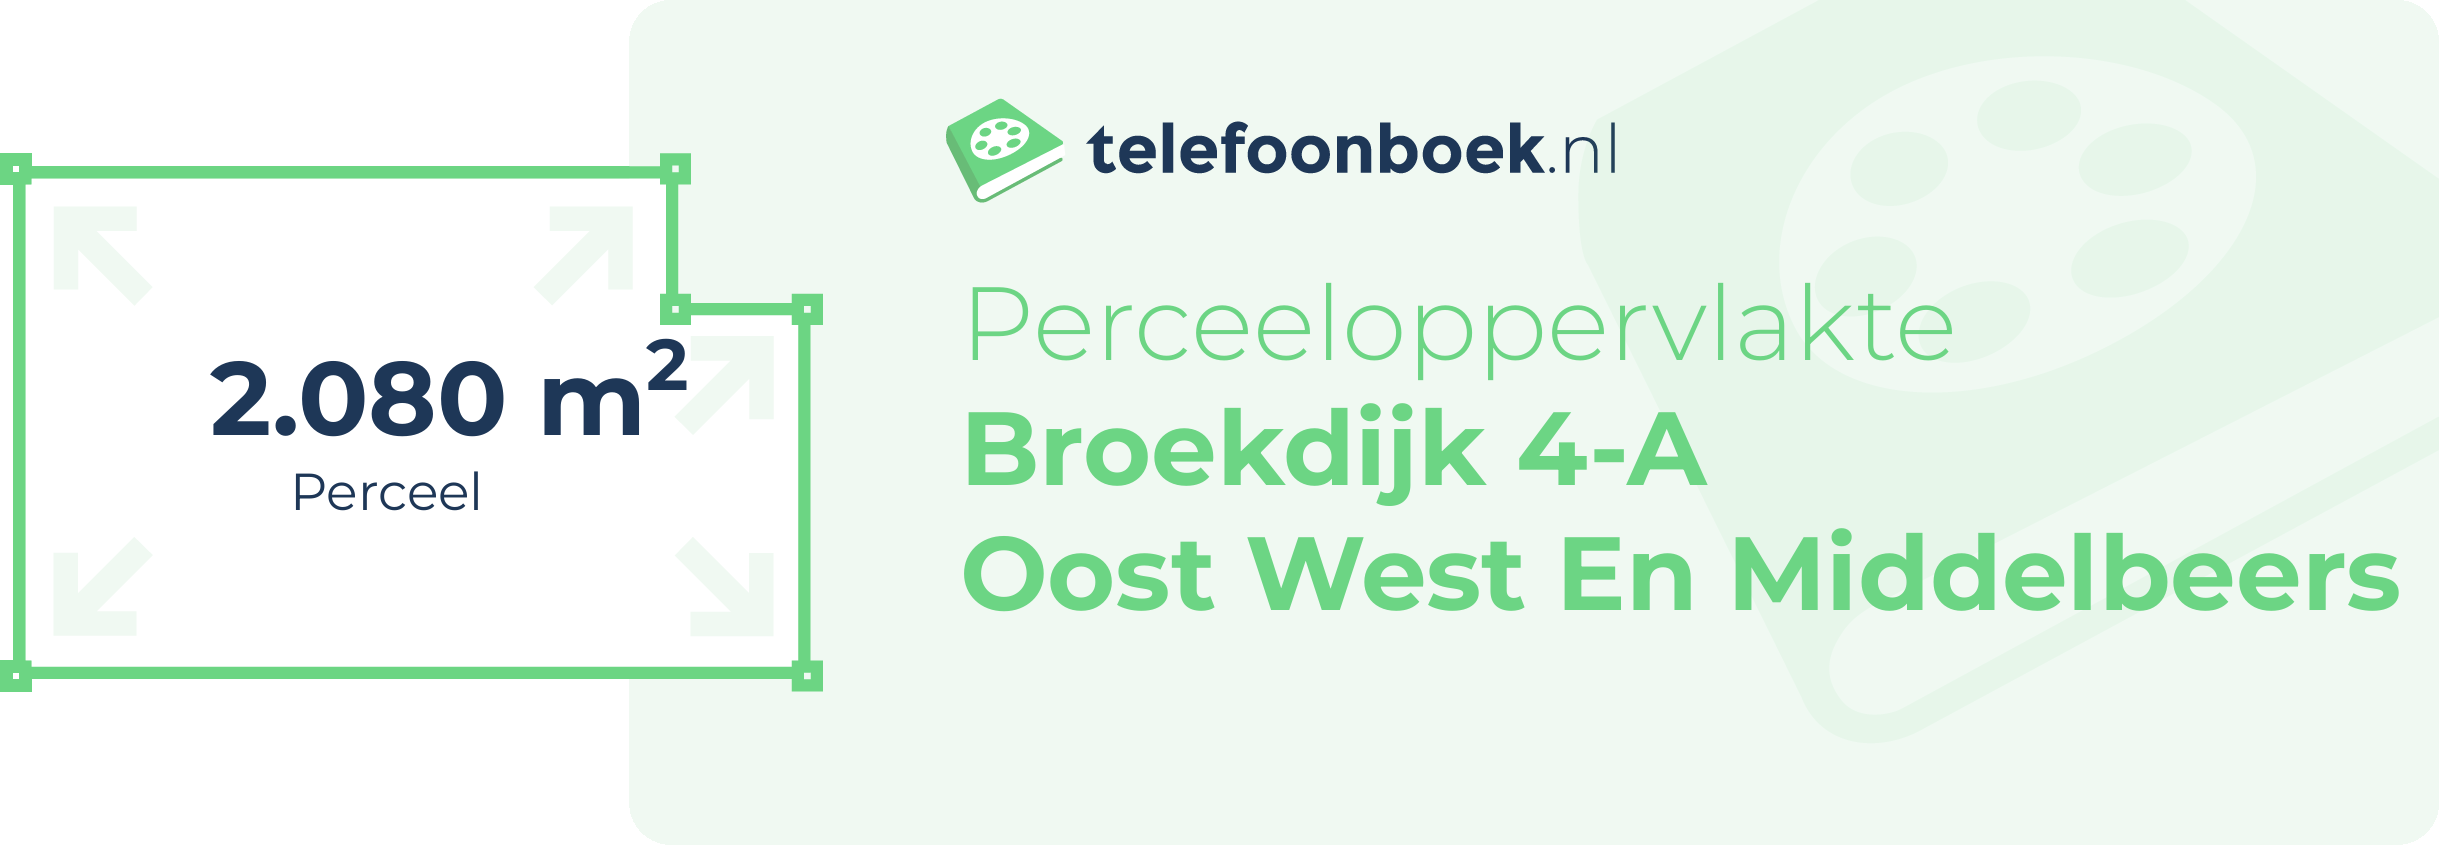 Perceeloppervlakte Broekdijk 4-A Oost West En Middelbeers